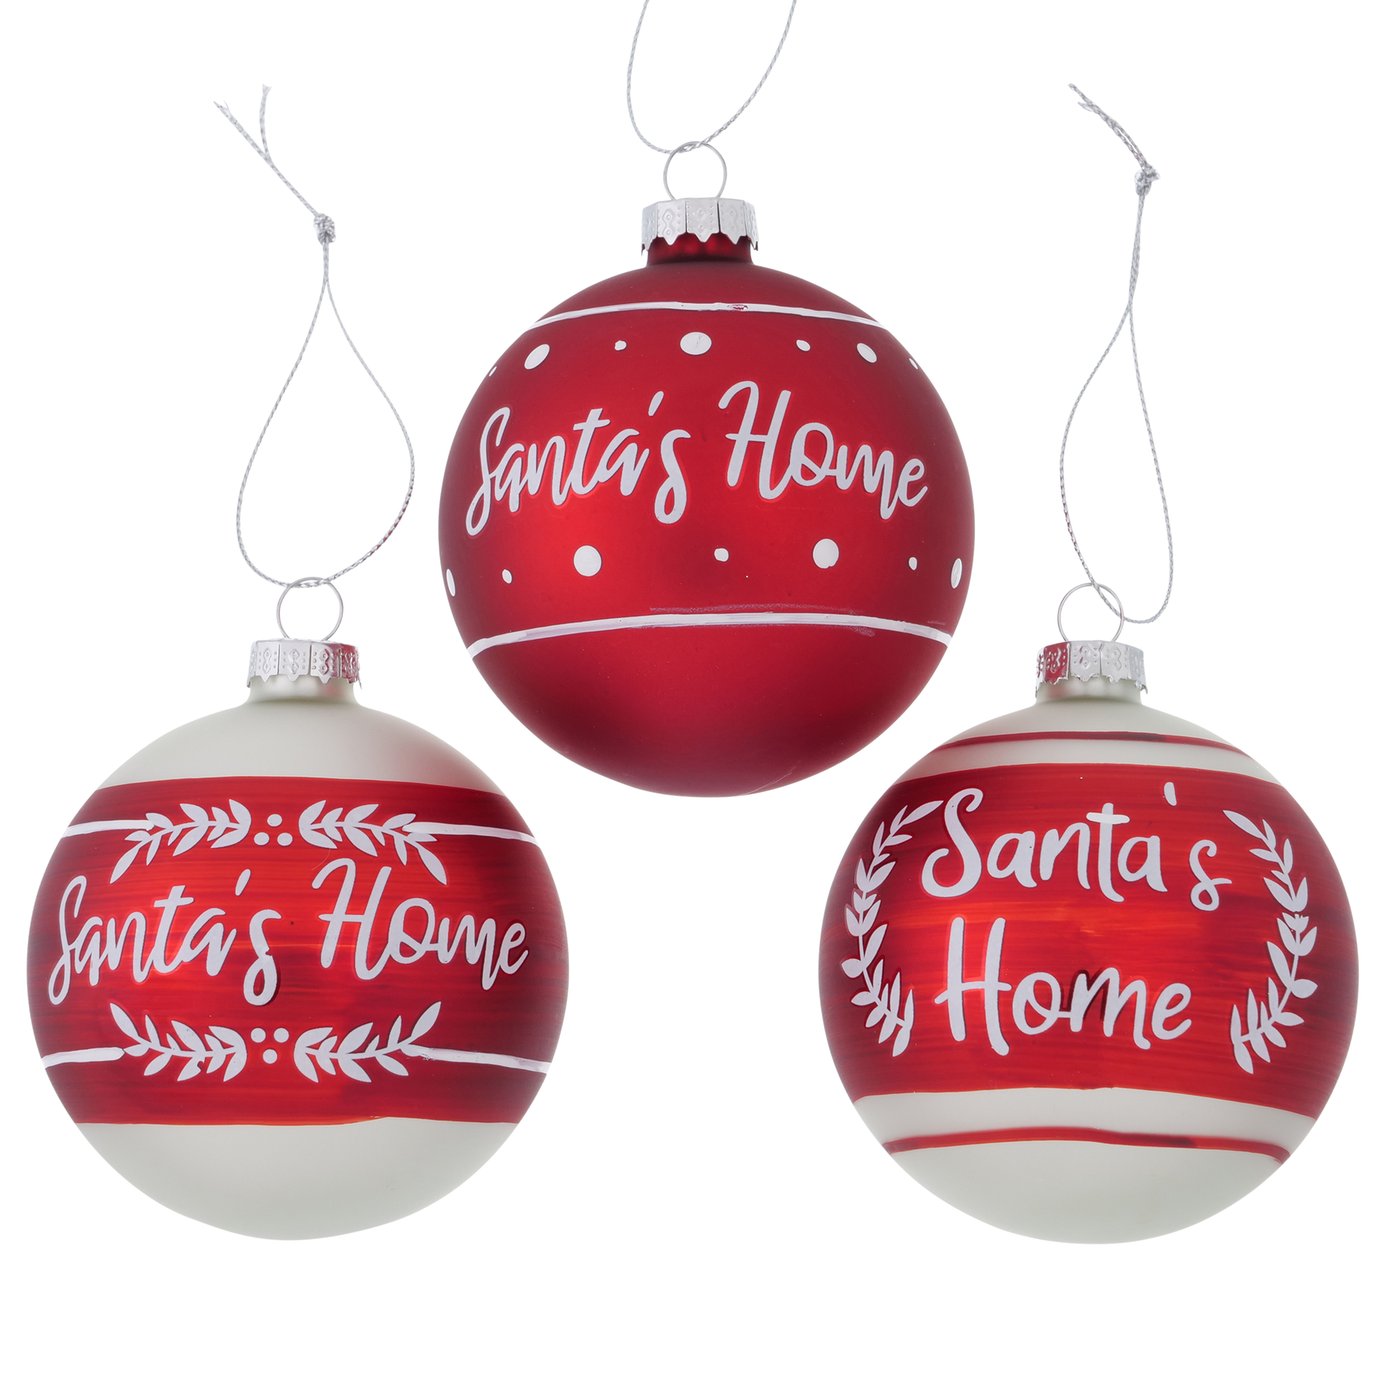 Glas Weihnachtskugel "Santa´s Home" rot weiß 12er Set - D 8cm, 2012136, 4020607894112, Weihnachtsbaumkugel, Christbaumkugel